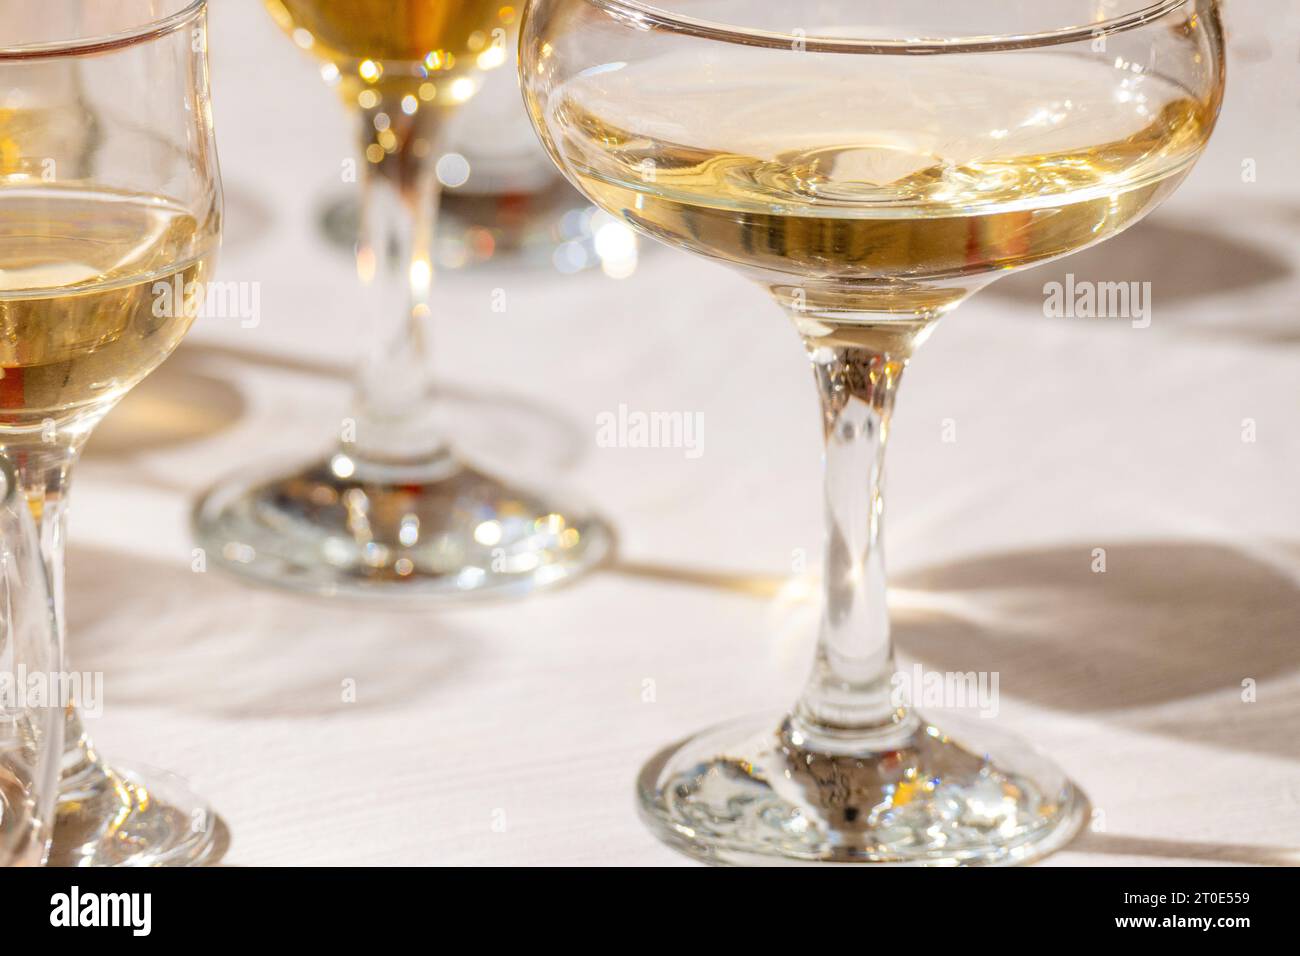 Scribe White Wine Glasses